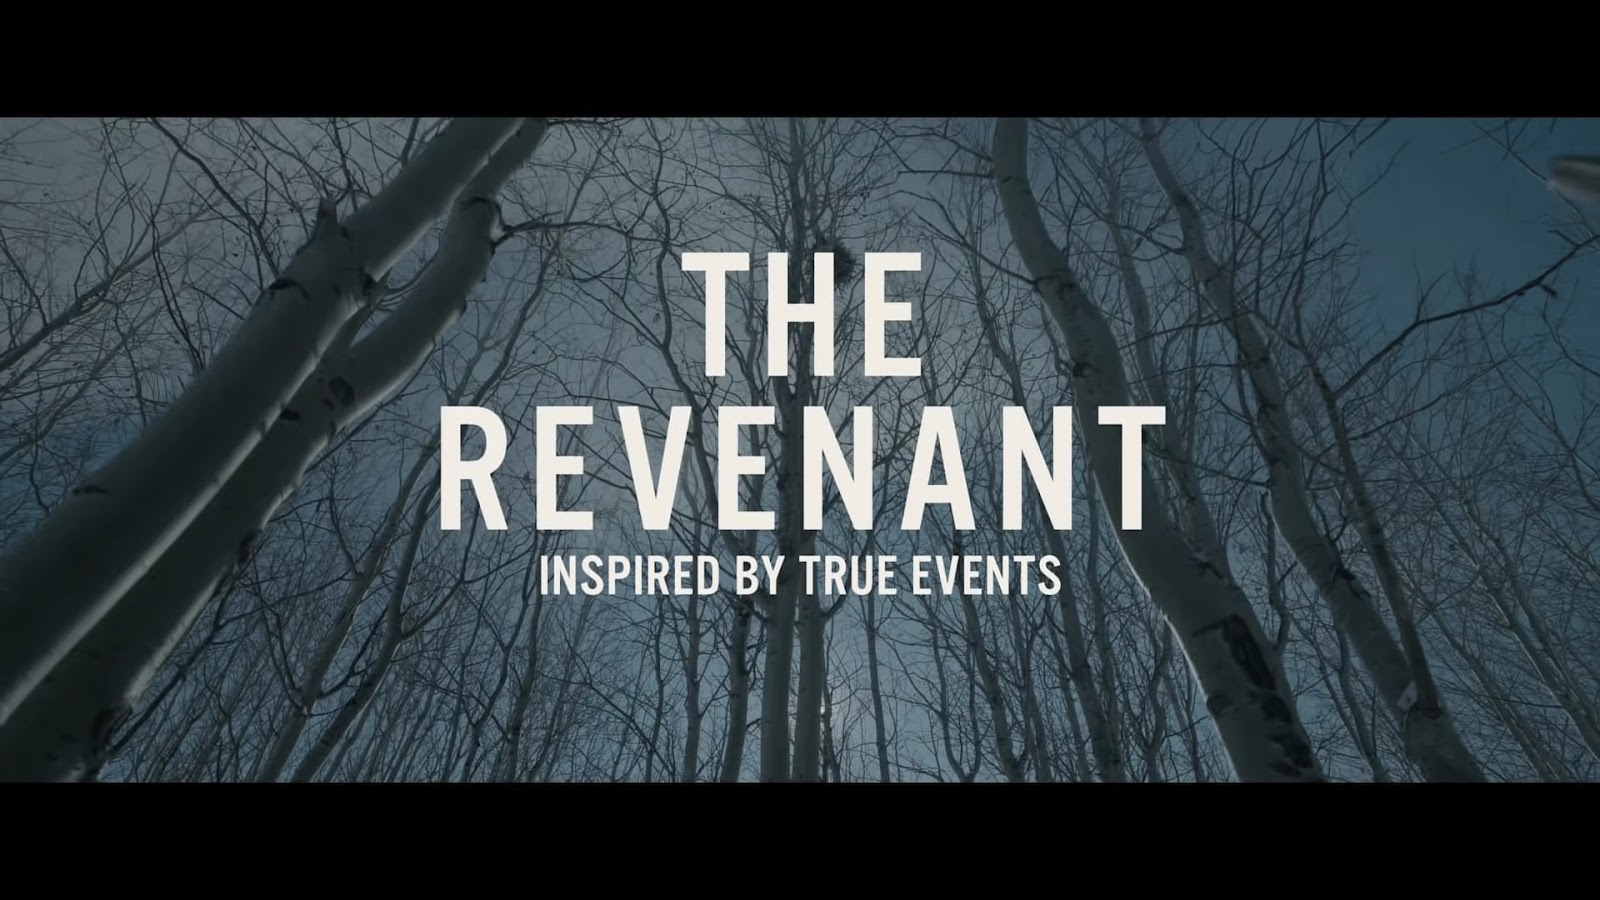 Comparing ‘The Revenant’: Book Versus Movie